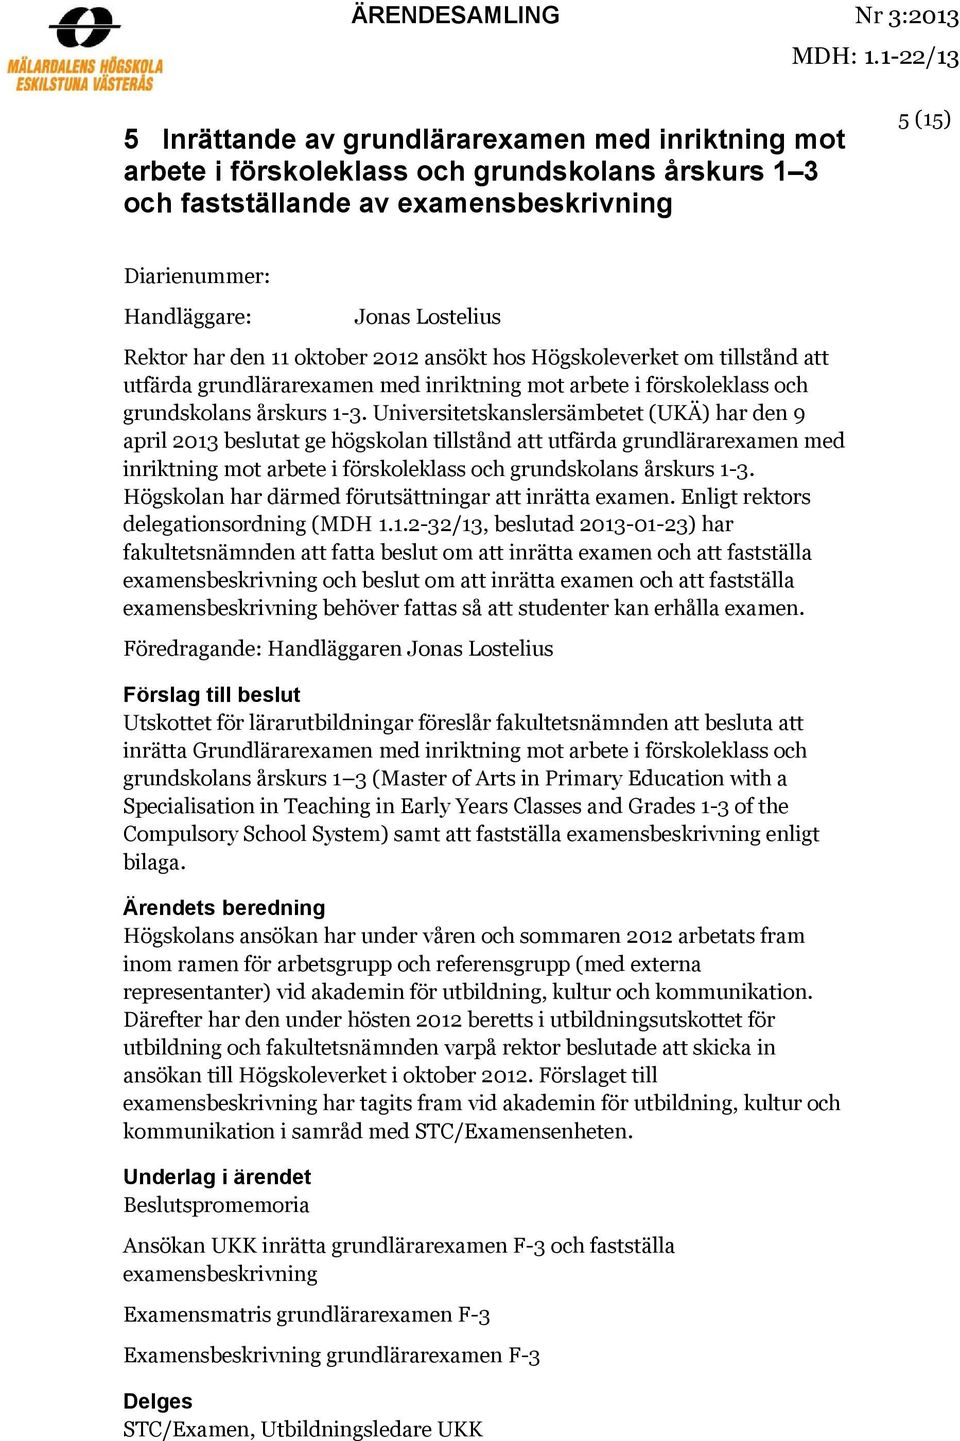 Lostelius Rektor har den 11 oktober 2012 ansökt hos Högskoleverket om tillstånd att utfärda grundlärarexamen med inriktning mot arbete i förskoleklass och grundskolans årskurs 1-3.